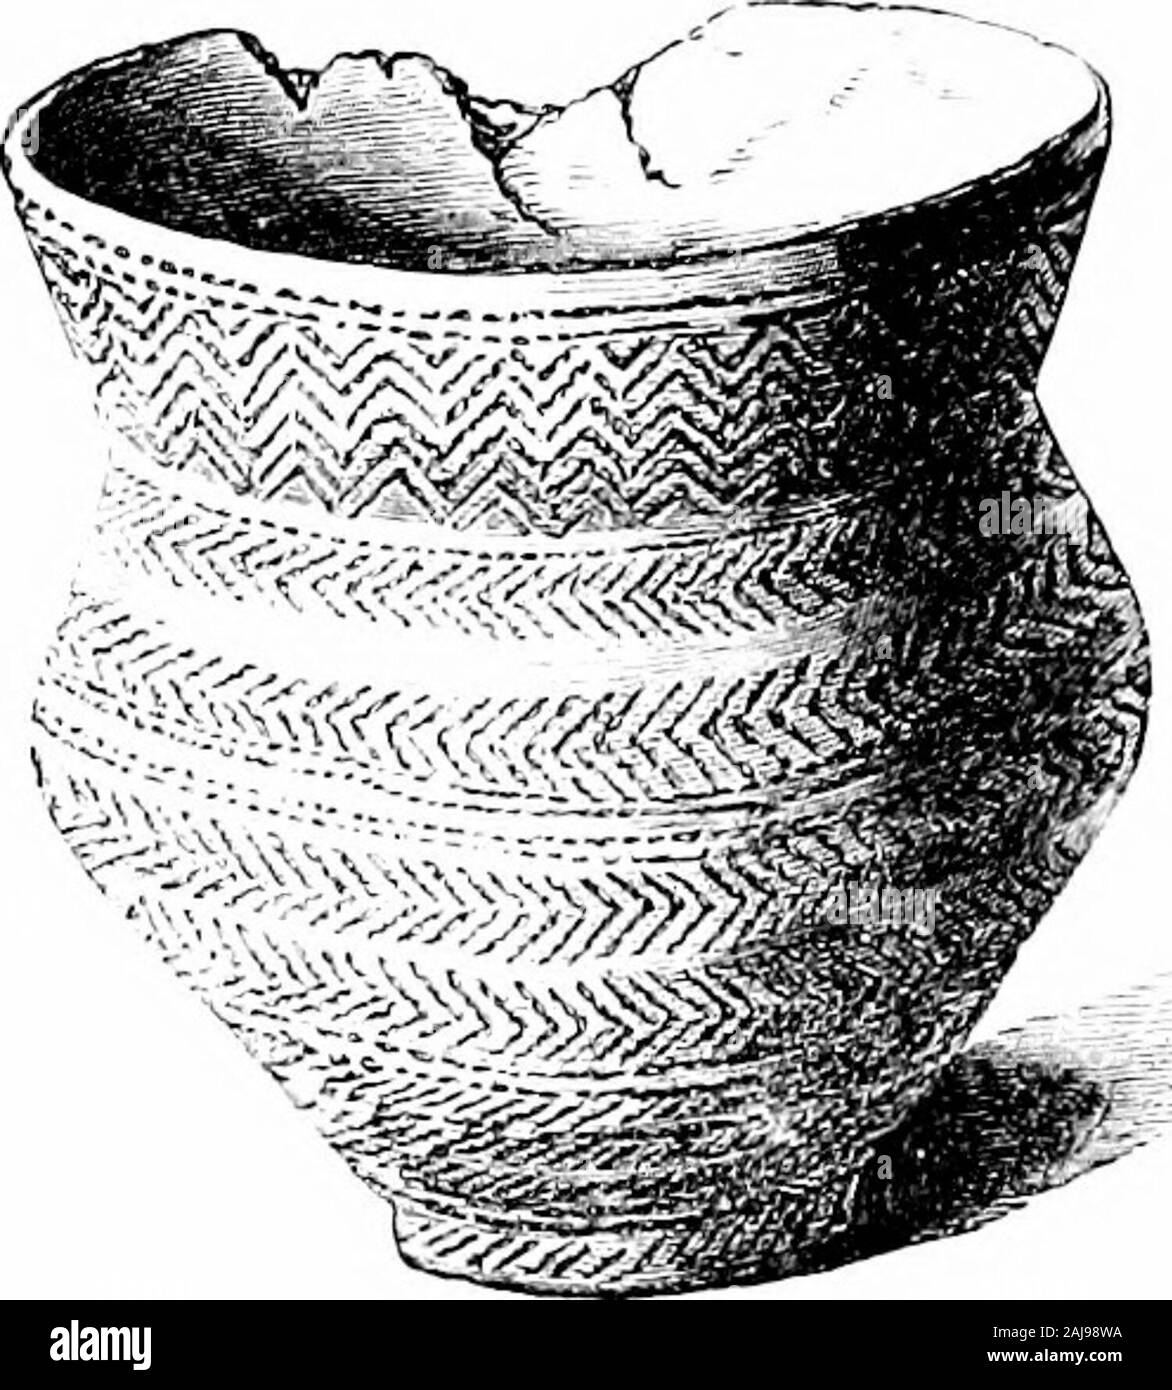 Ein Führer zu den Antiquitäten aus der Bronzezeit in der Abteilung der Britischen und mittelalterliches Antiquitäten. Platte V. SEruLCunAL I. inEuv, Bkitisii Isi. e-Casi ^s 12-30. - Ij |,. 41.! YORKSHIRE BARROWS 53 den Abbau von etwa kreisförmigen Wohnungen in dem Becher, cinerary Urnen, und andere Schiffe (Fall 13) sagte sind tolight gekommen zu sein, zusammen mit den Knochen der Tiere und verzierten potteryfragments, und ein Teil von einem polierten Stein ax. Diese Hütte - circlesor pit-Wohnungen waren, indem er einen Stock 3-7 ft., andthrowing die Erde rund um die Öffnung, die war 14-20 ft gebildet. Durchmesser: Auf der Bank. Stockfoto